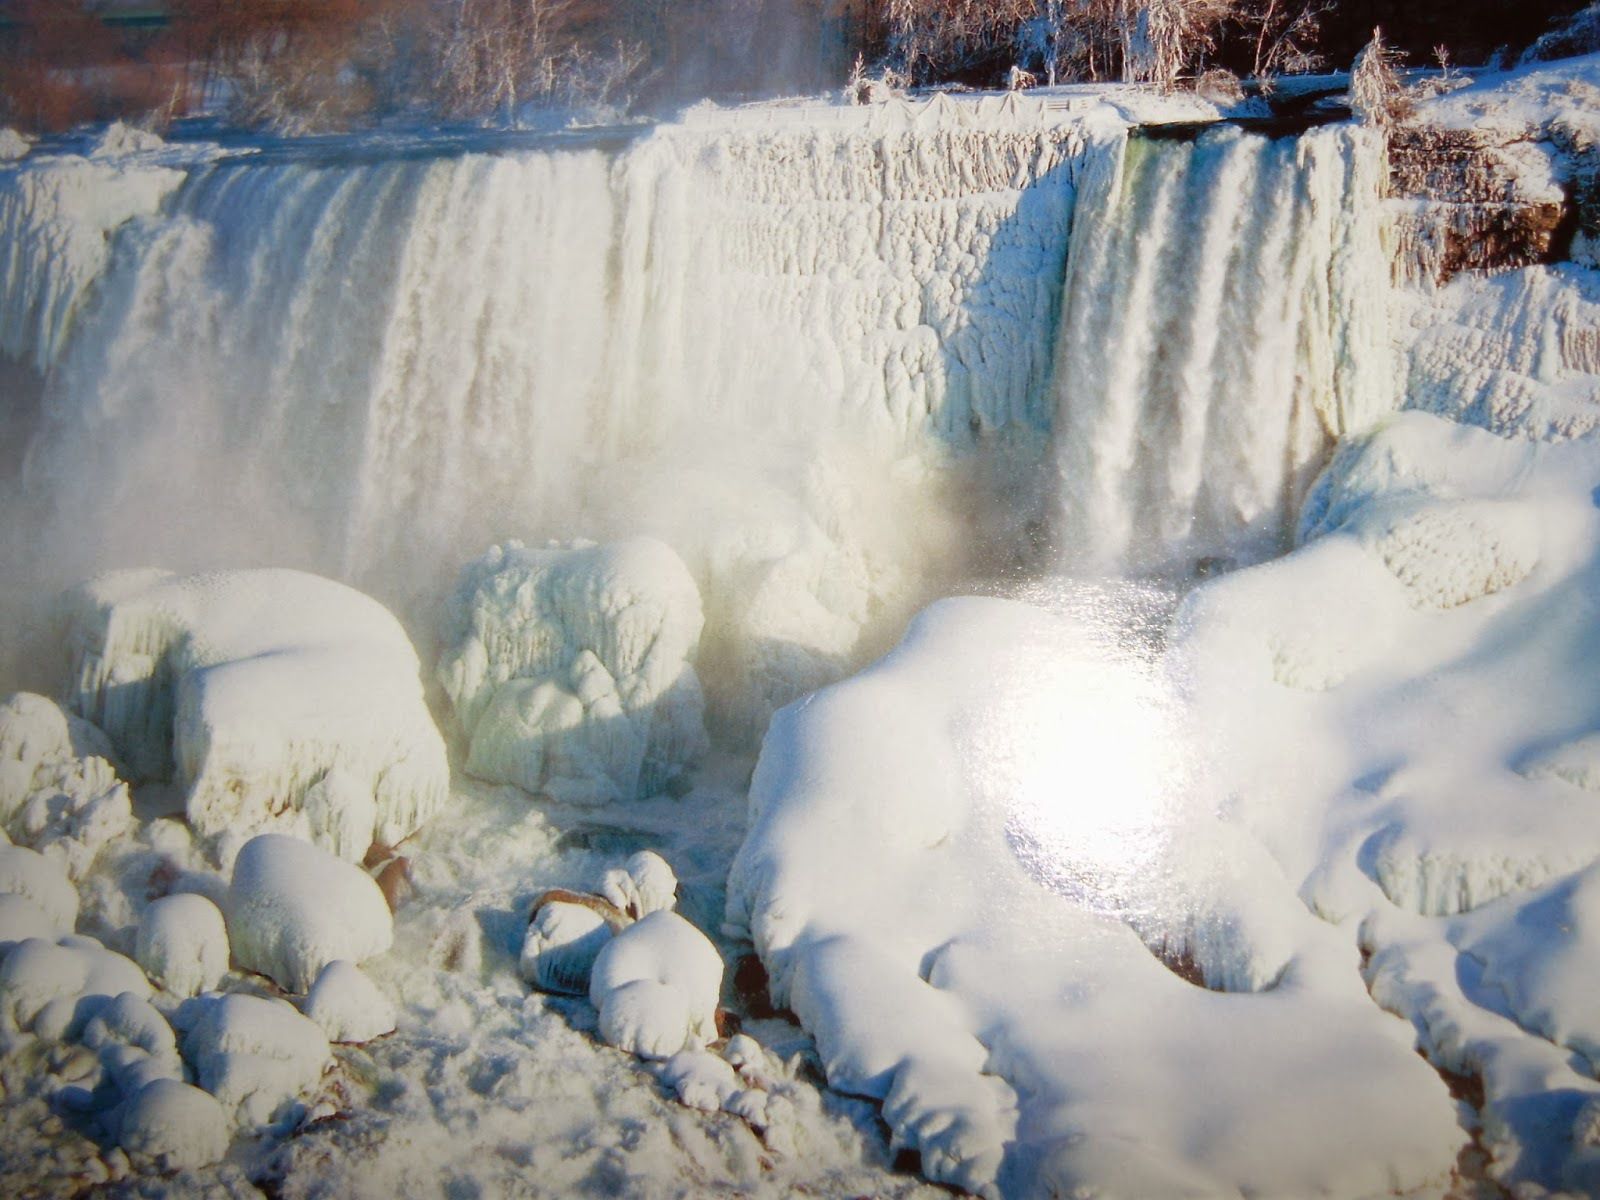 Frozen Niagara Falls wallpaper .com